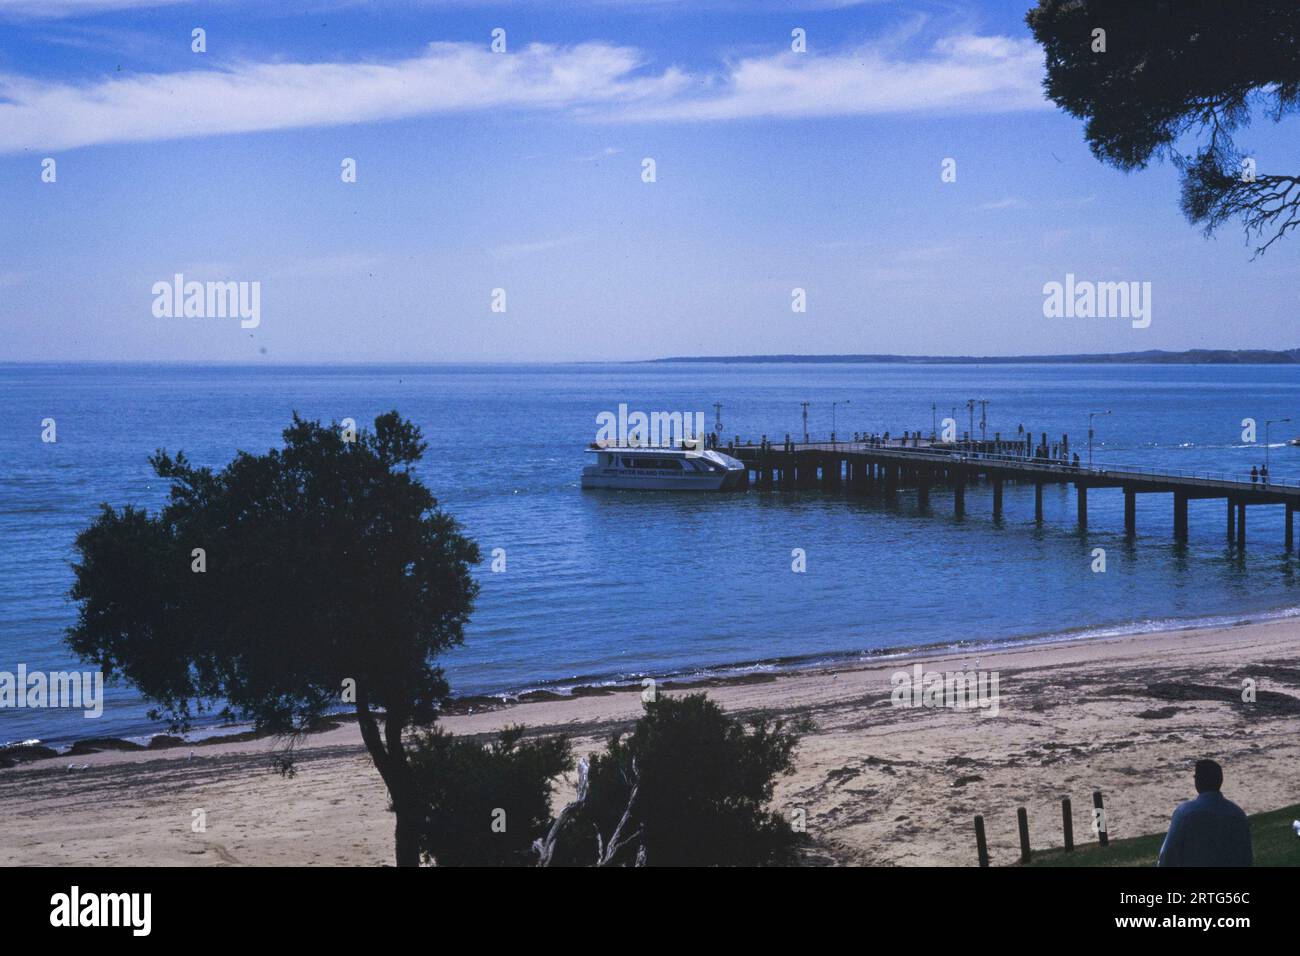 Melbourne, Australie décembre 1999 : vue historique du paysage côtier de Melbourne dans les années 1990, capturant la beauté sereine de l'époque. Banque D'Images